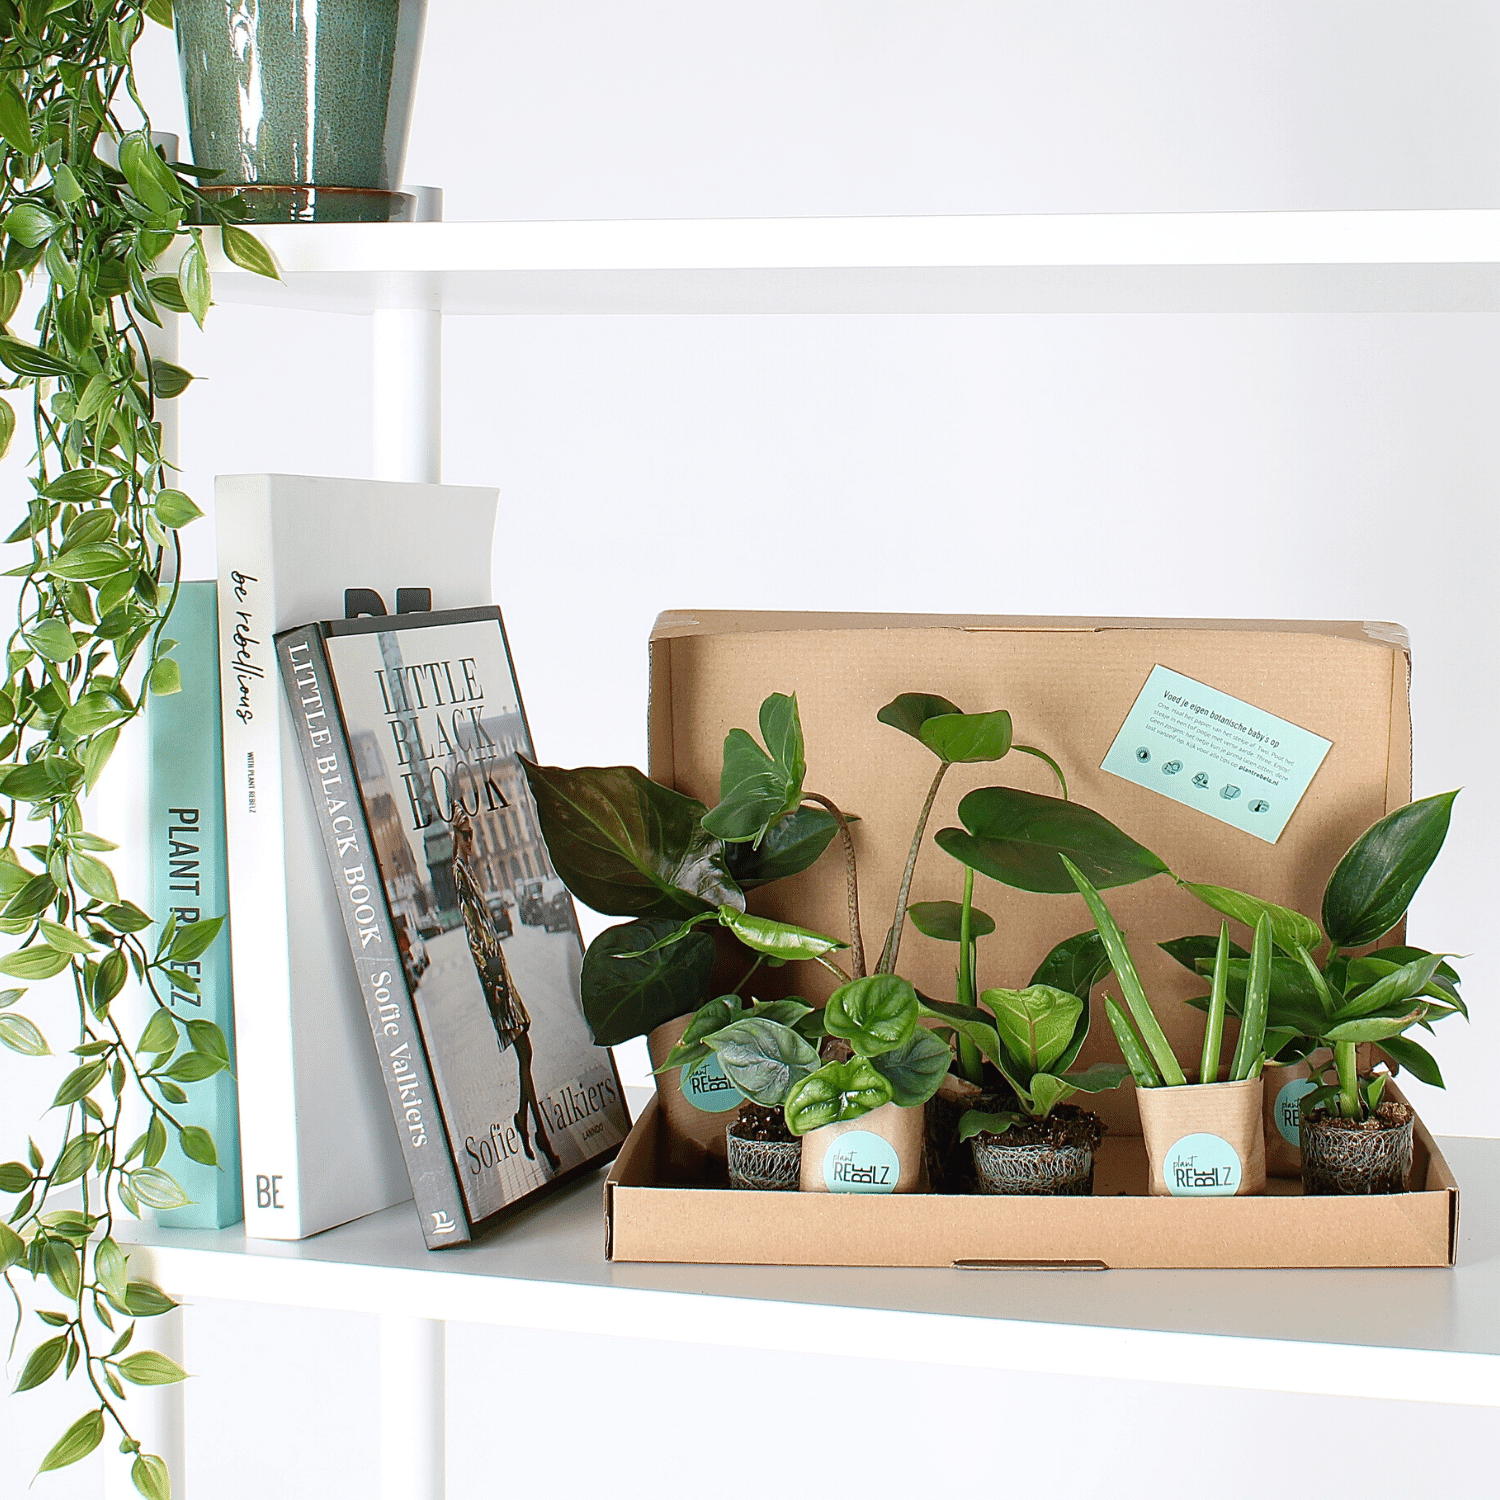 Haal meer groen in huis met PlantRebelz. Met kamerplanten en stekjes uit hen eigen kassen